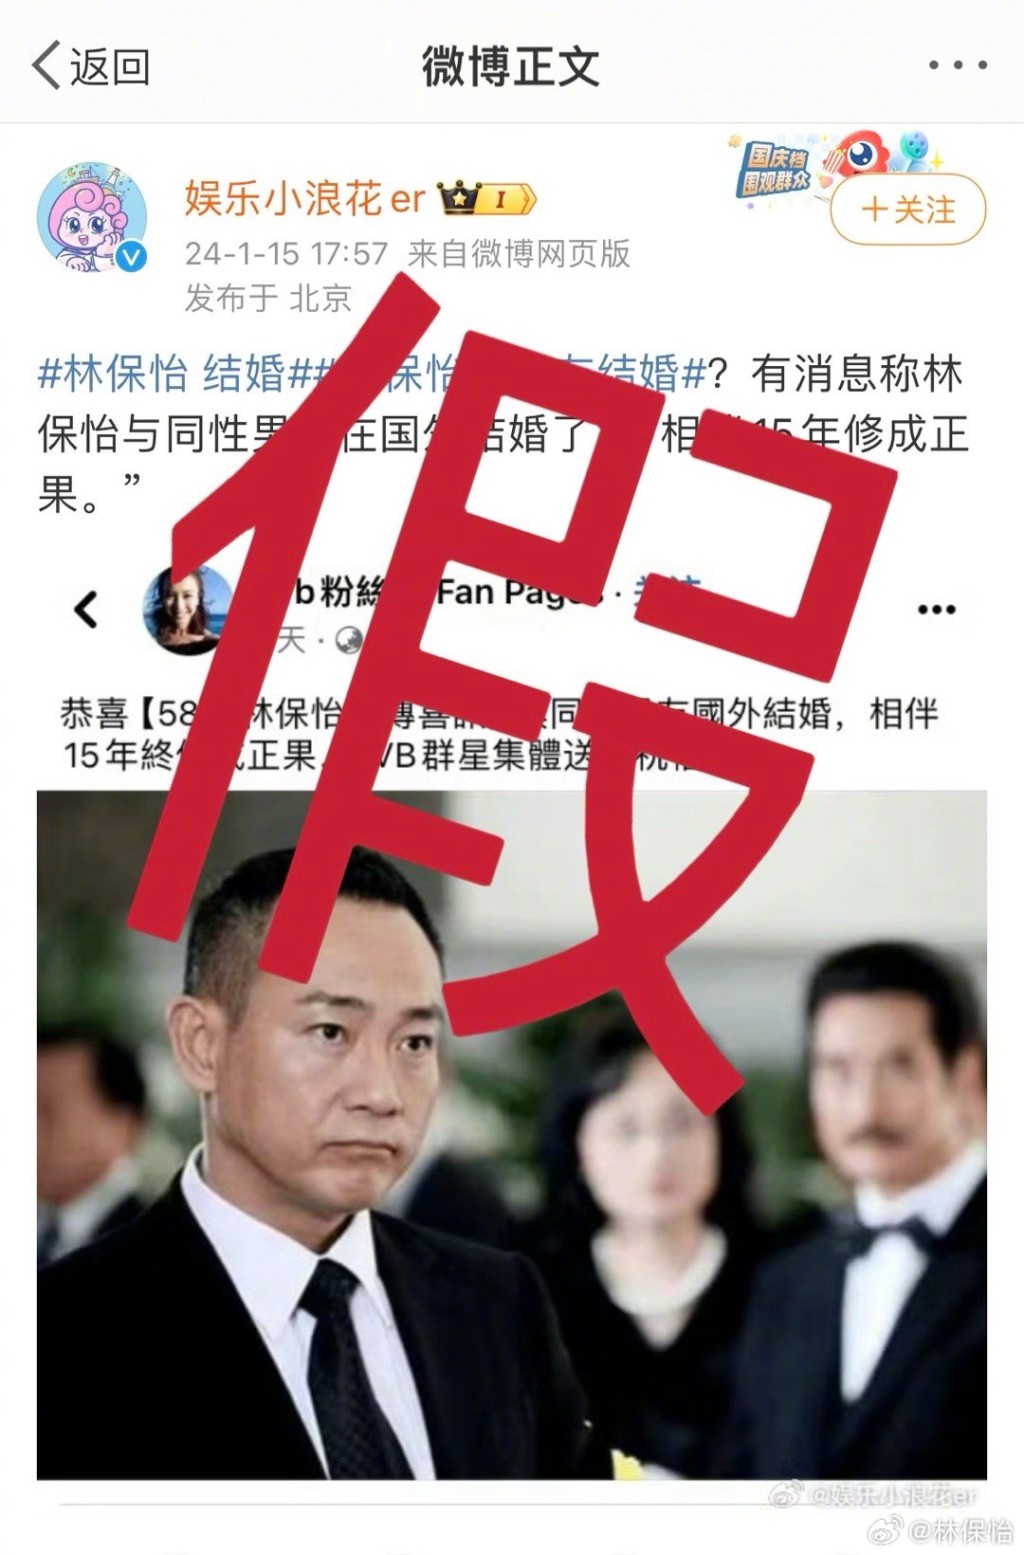 部份假新聞更言之鑿鑿的寫到「TVB群星集體送上祝福」。